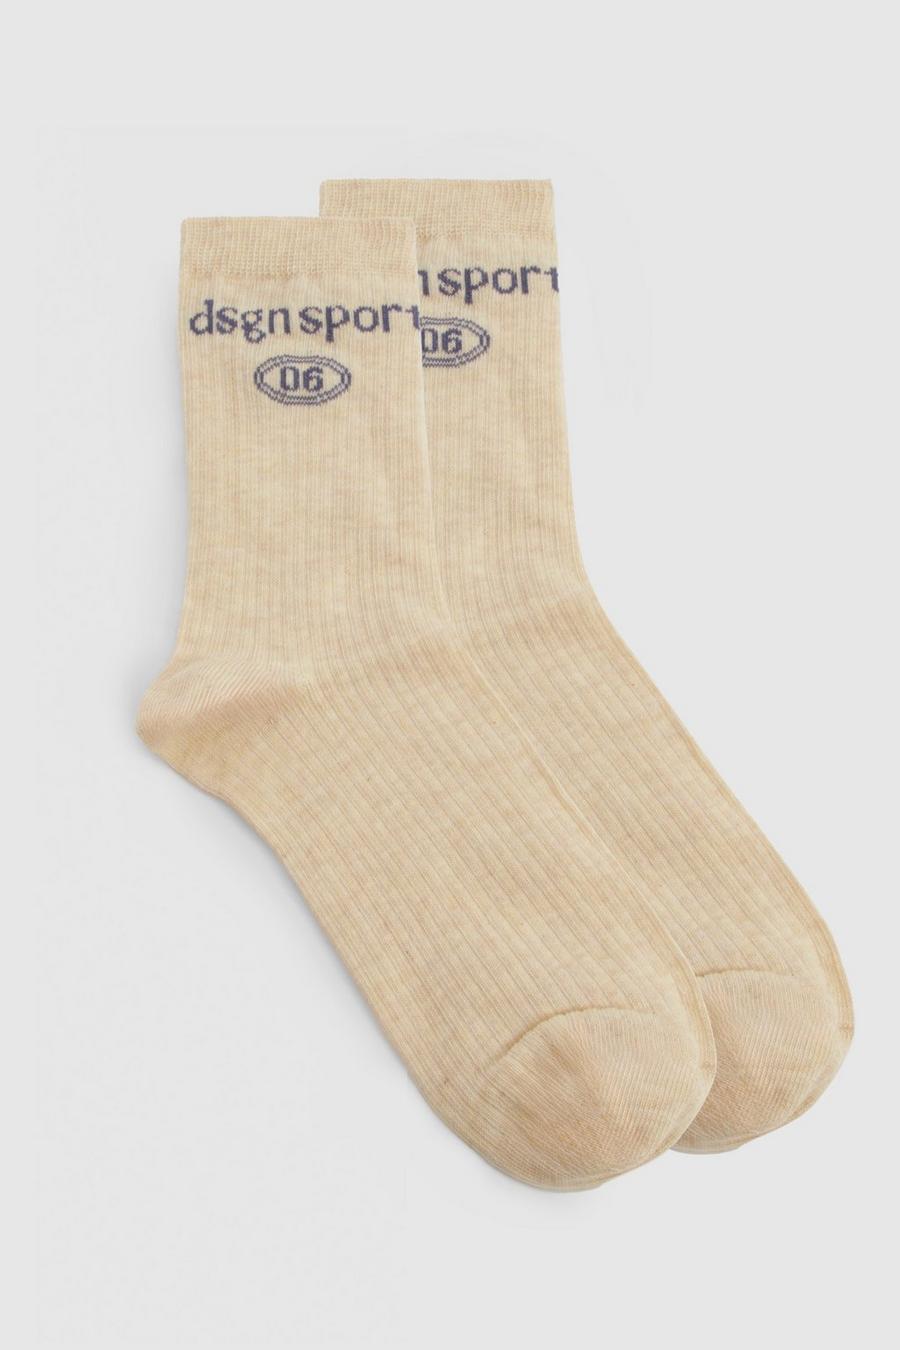 Dsgn Sport Socken, Oatmeal image number 1